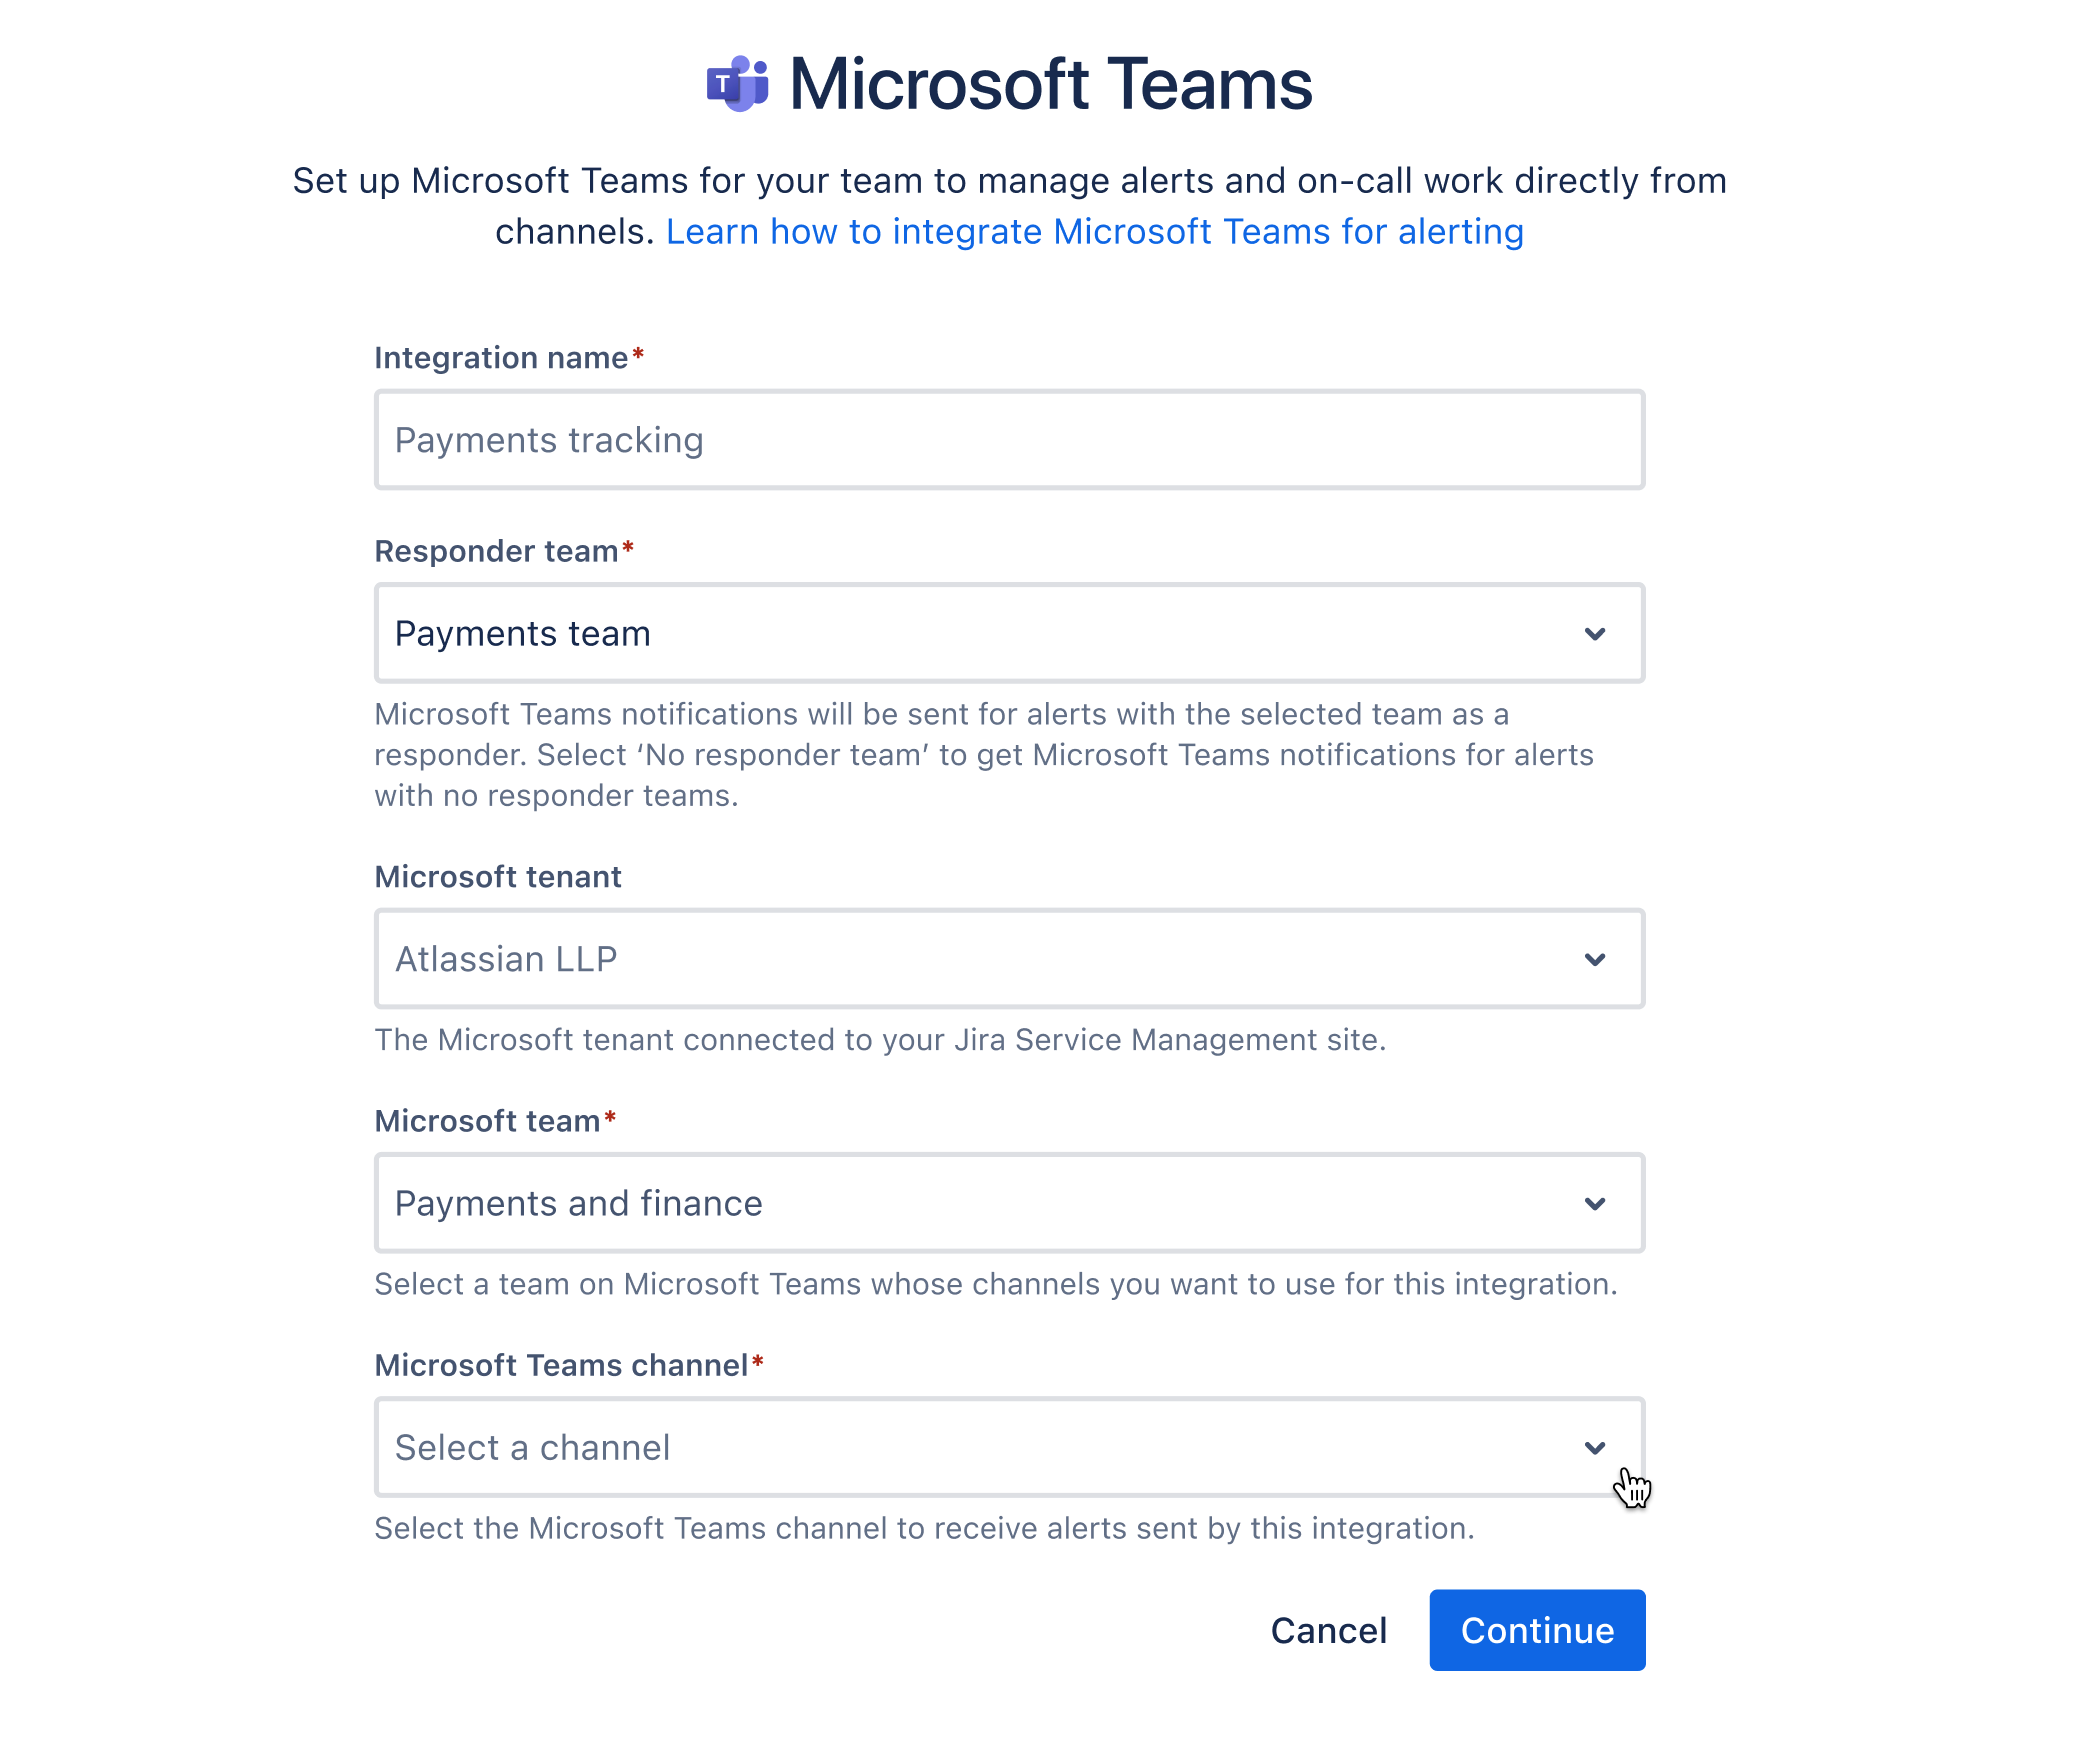 Campi del modulo per le integrazioni di Microsoft Teams